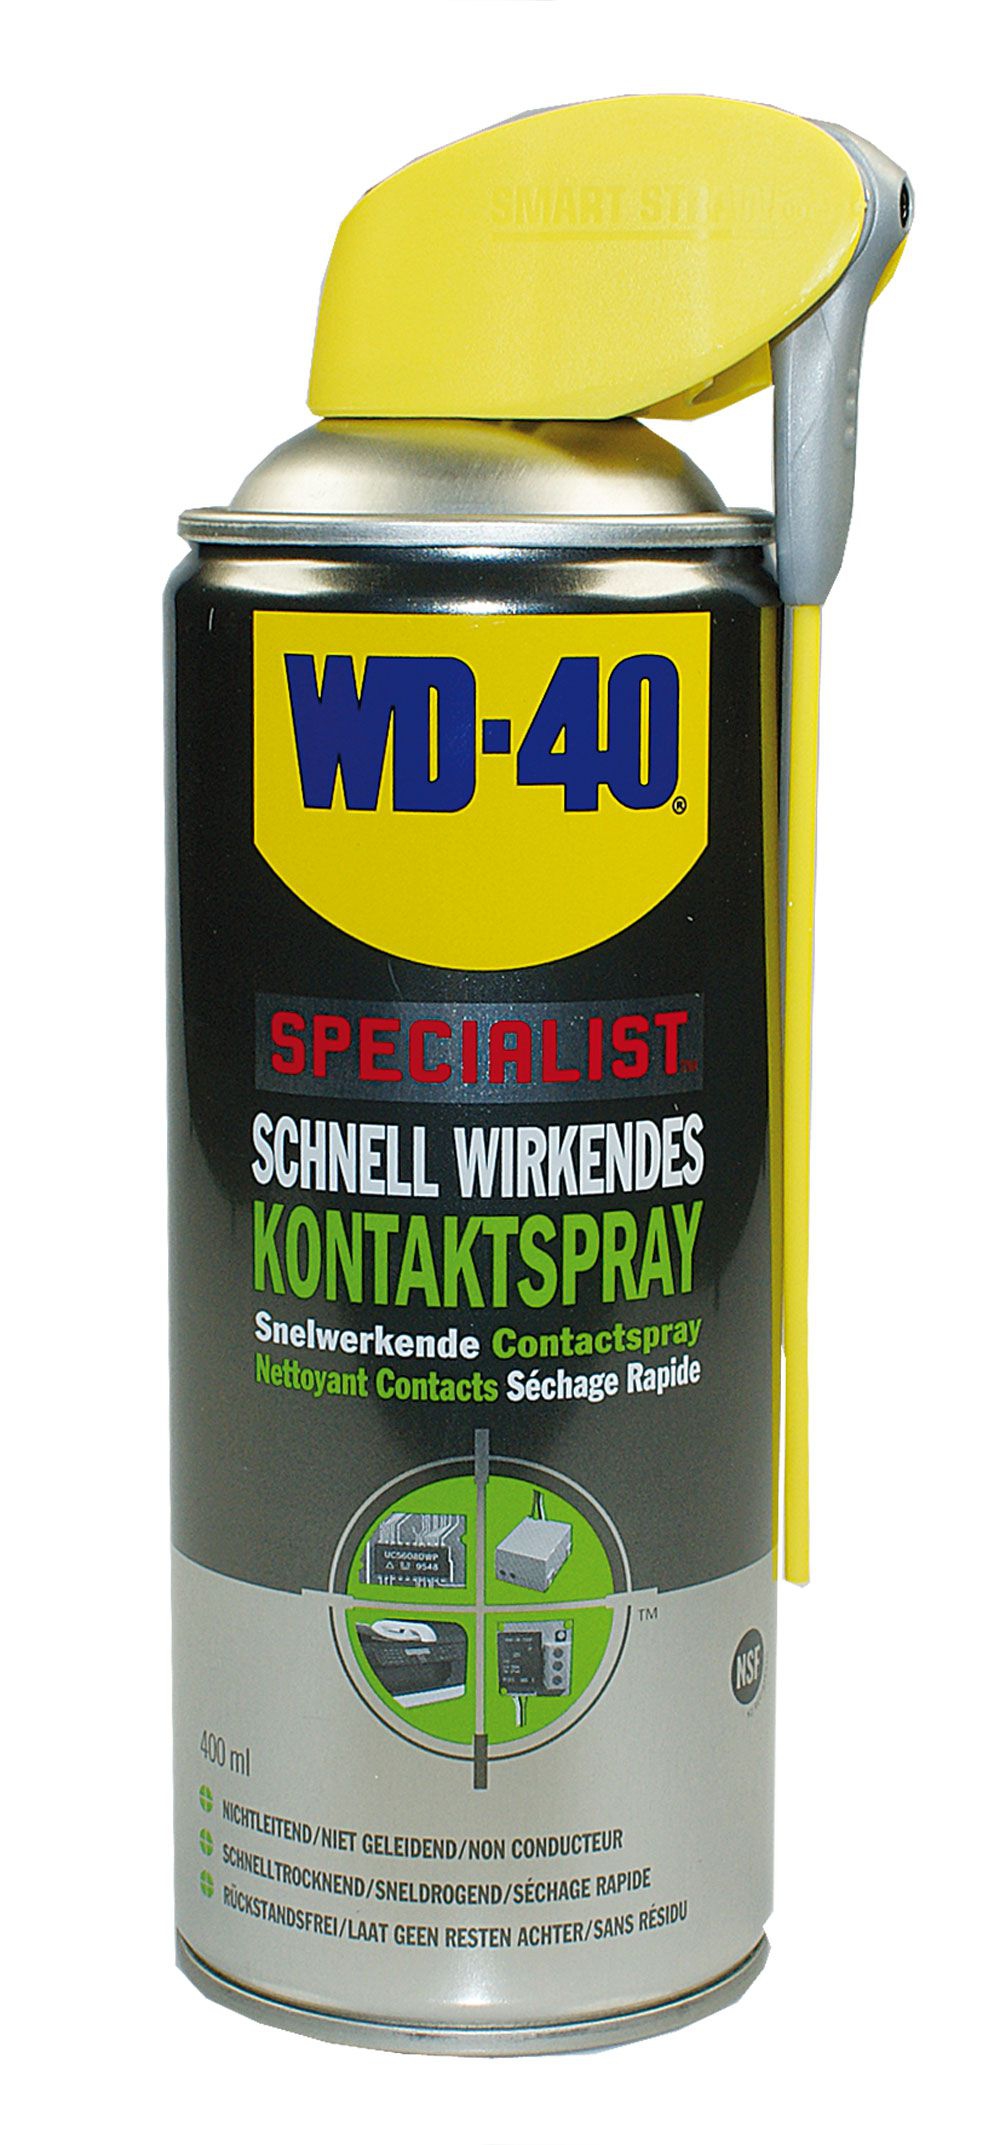 WD-40 Specialist Kontaktreiniger mit Smart Straw schnellwirkendes